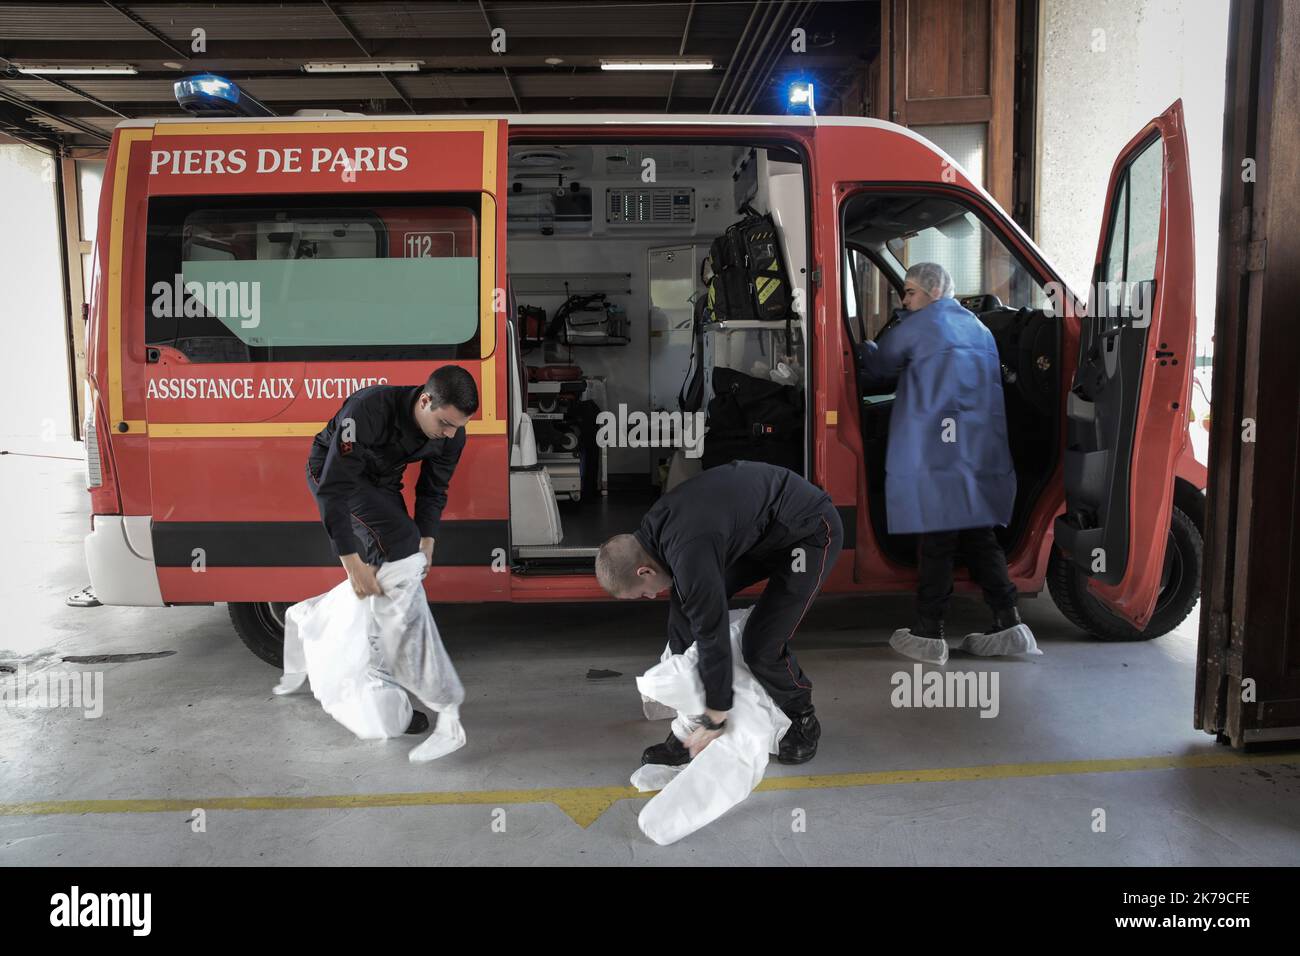 Pompiers militaires français du BSPP (Brigade des Sapeurs pompiers de Paris) d'Ivry sur Seine (Paris-banlieue) au travail pendant l'épidemème covid-19 Banque D'Images